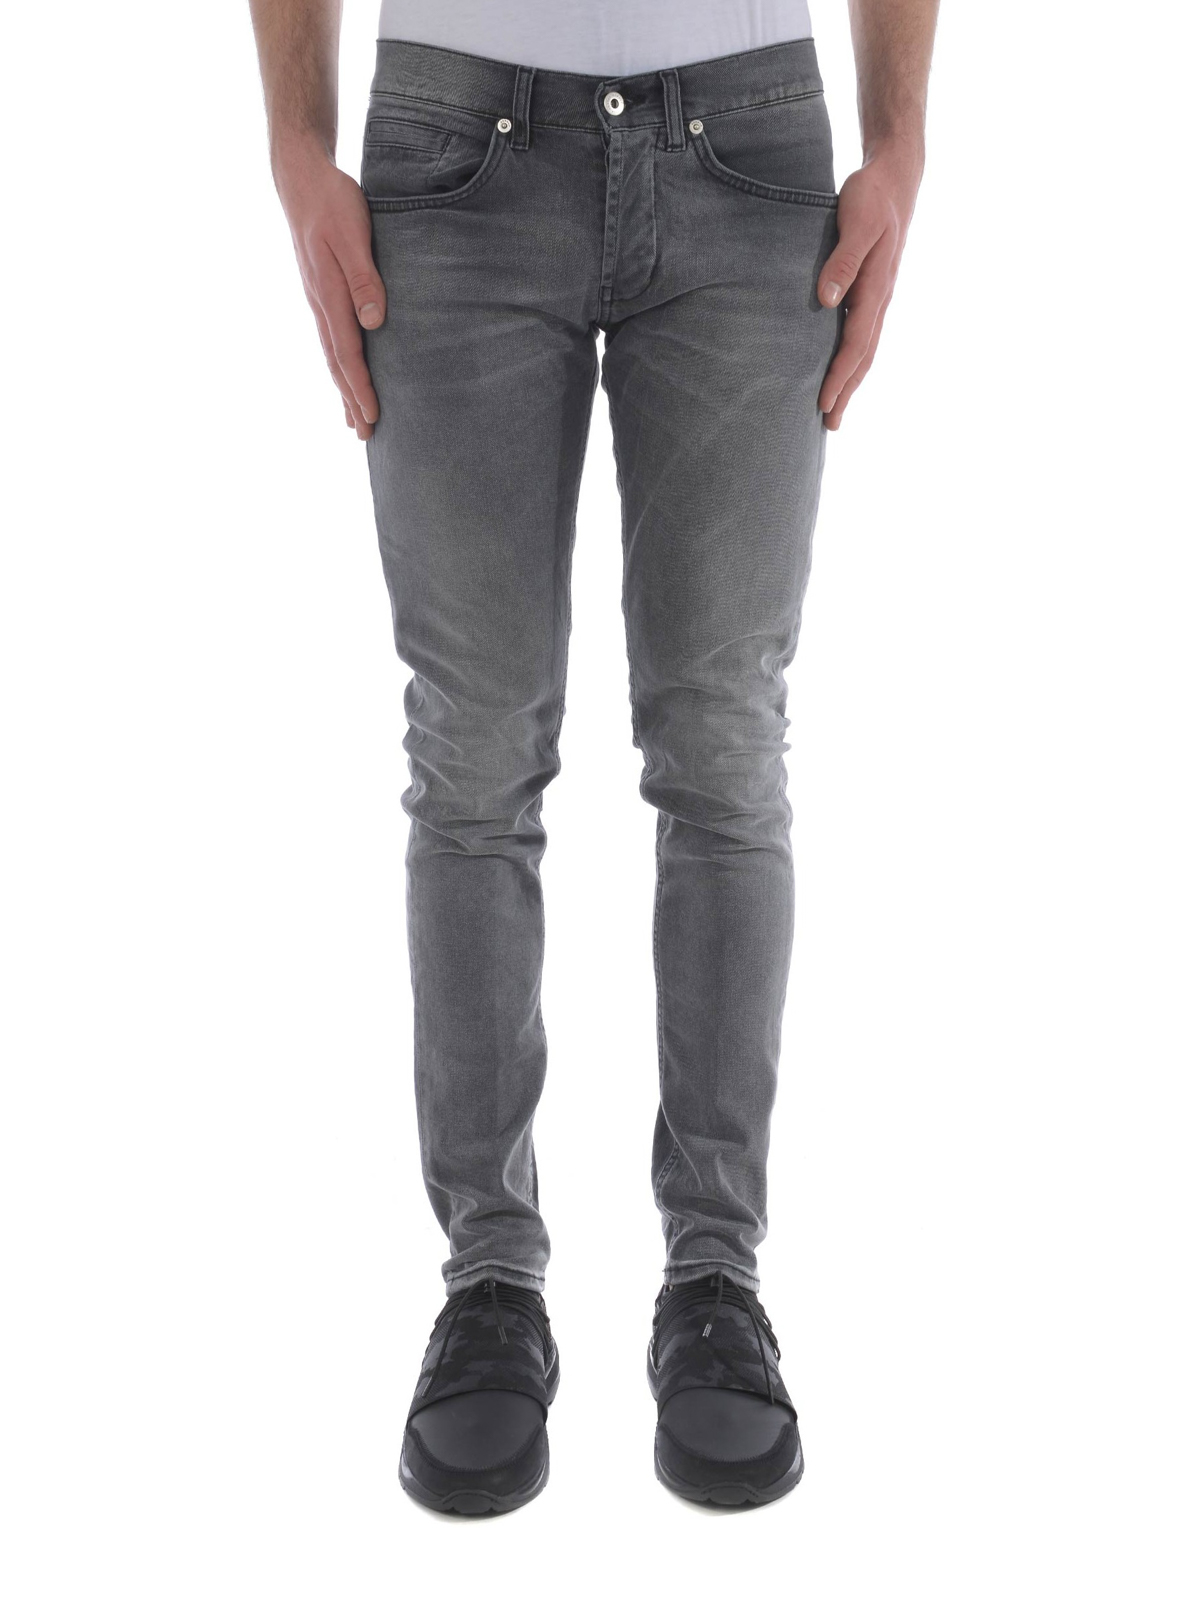 stone grey jeans